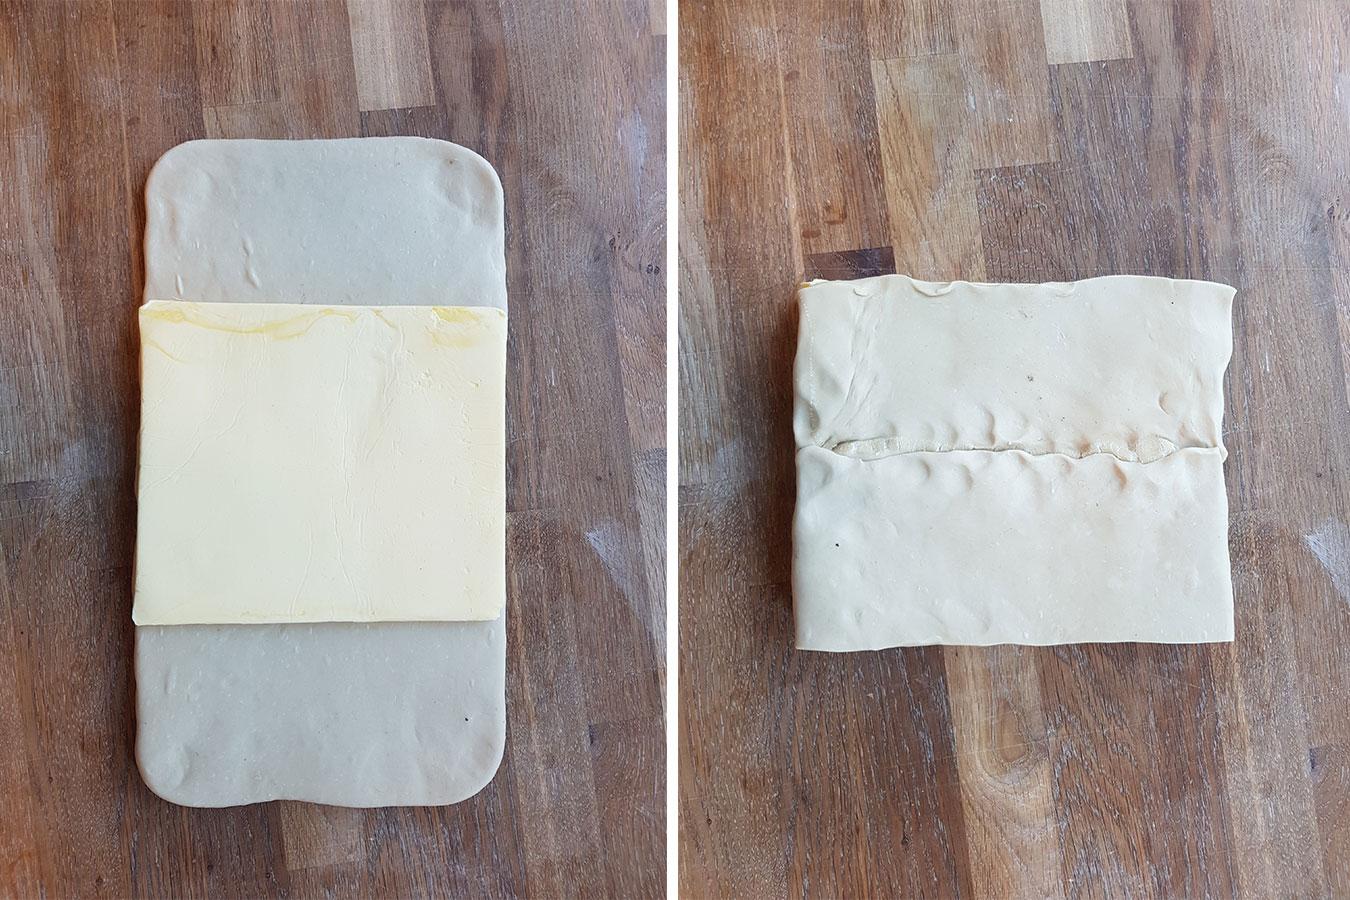 Start med å plassere smøret i midten av deigen og brett deigen over smøret fra alle kanter. Smøret skal være pakket inn som en sandwich eller som et brev.